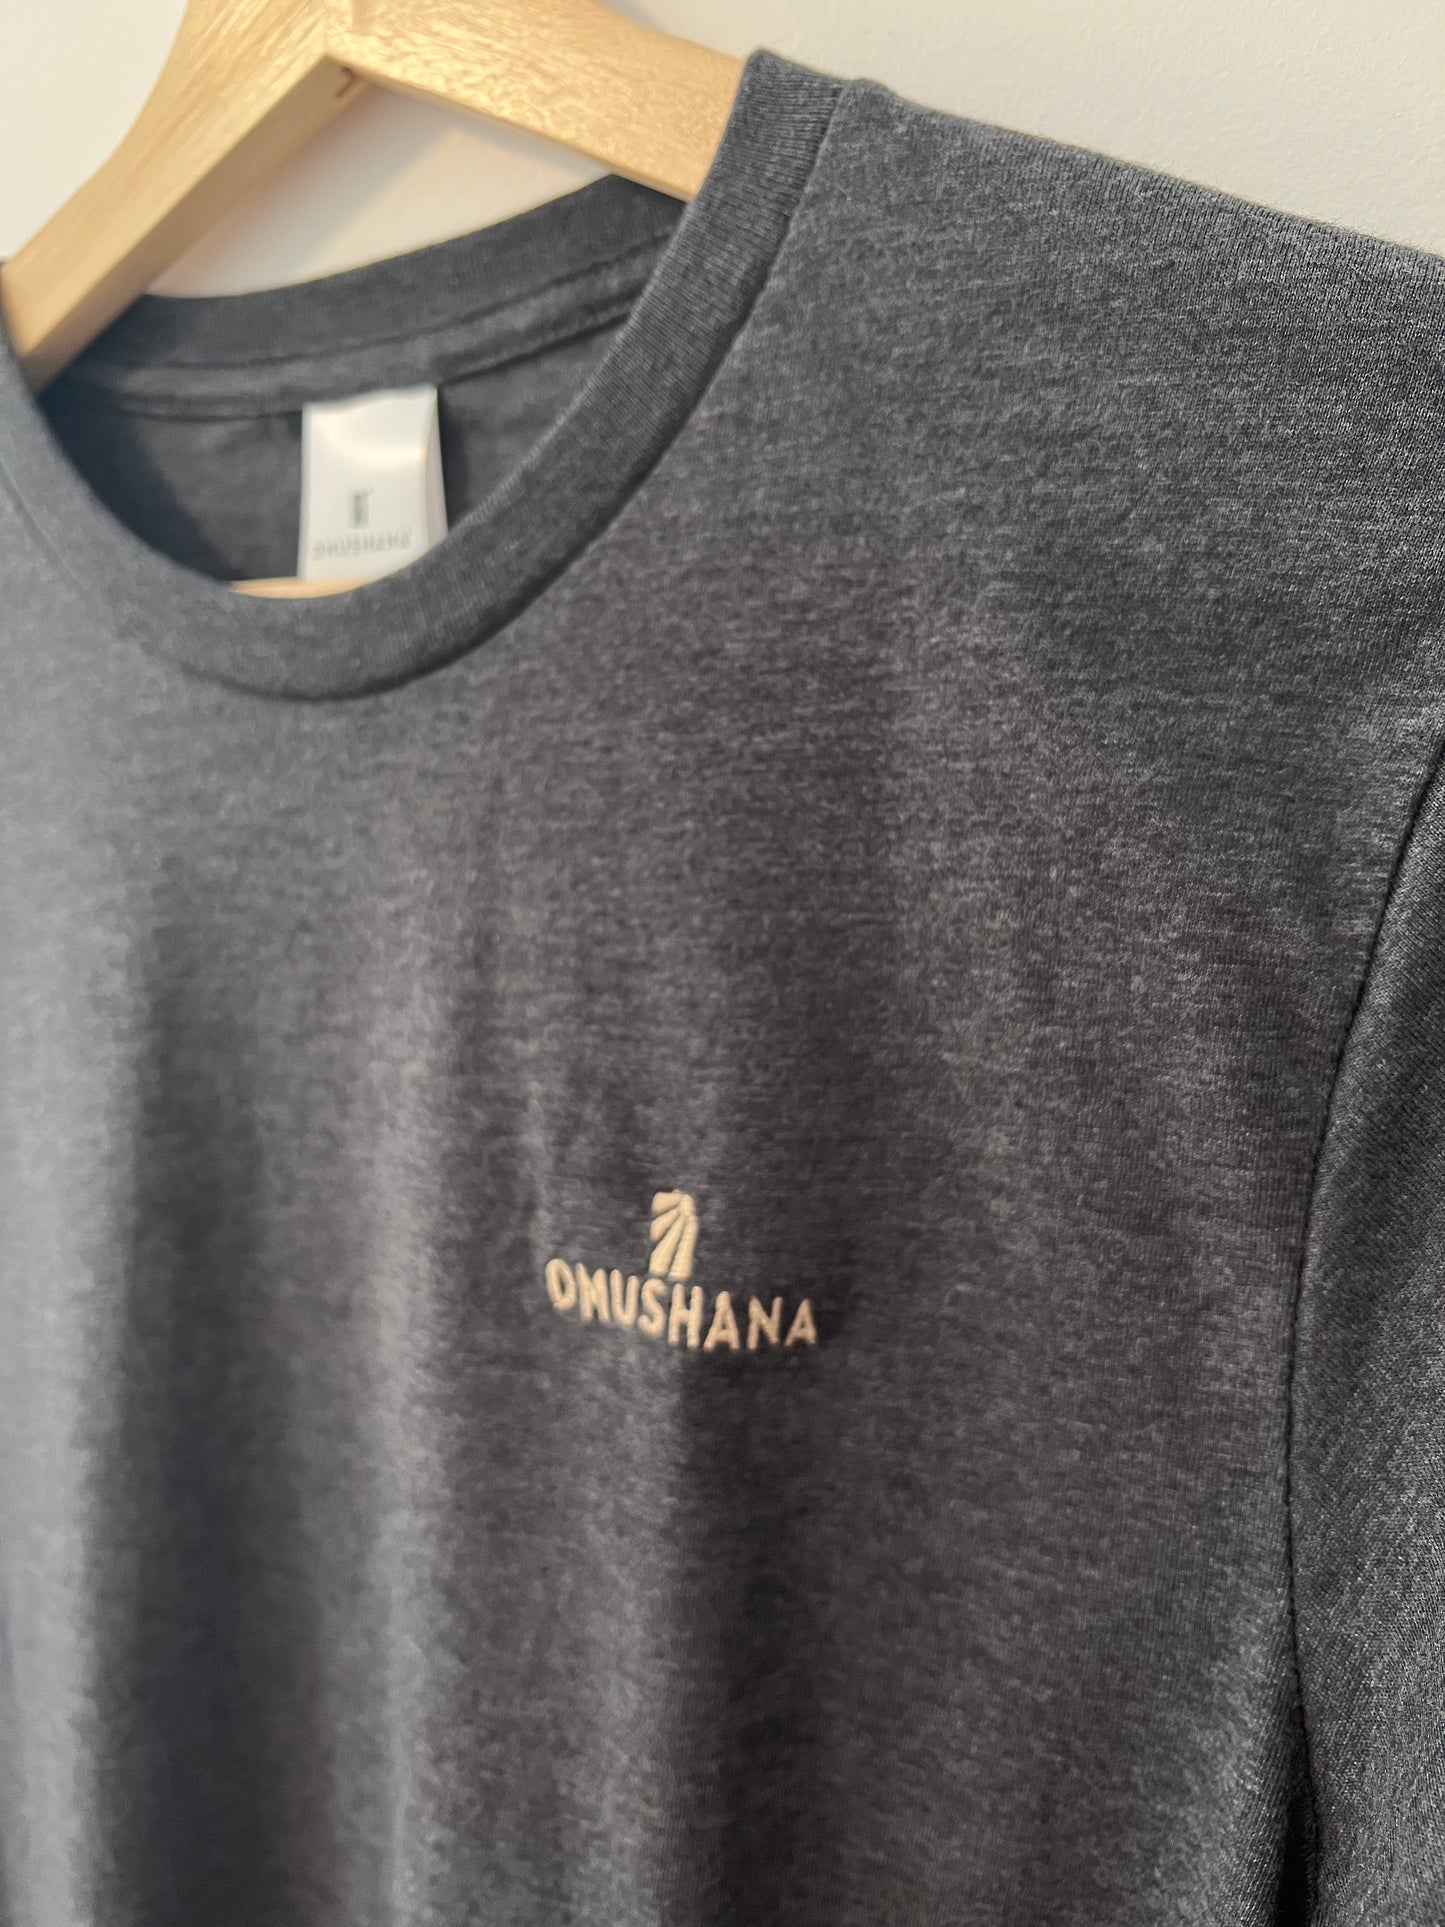 Omushana® Label Long Sleeve